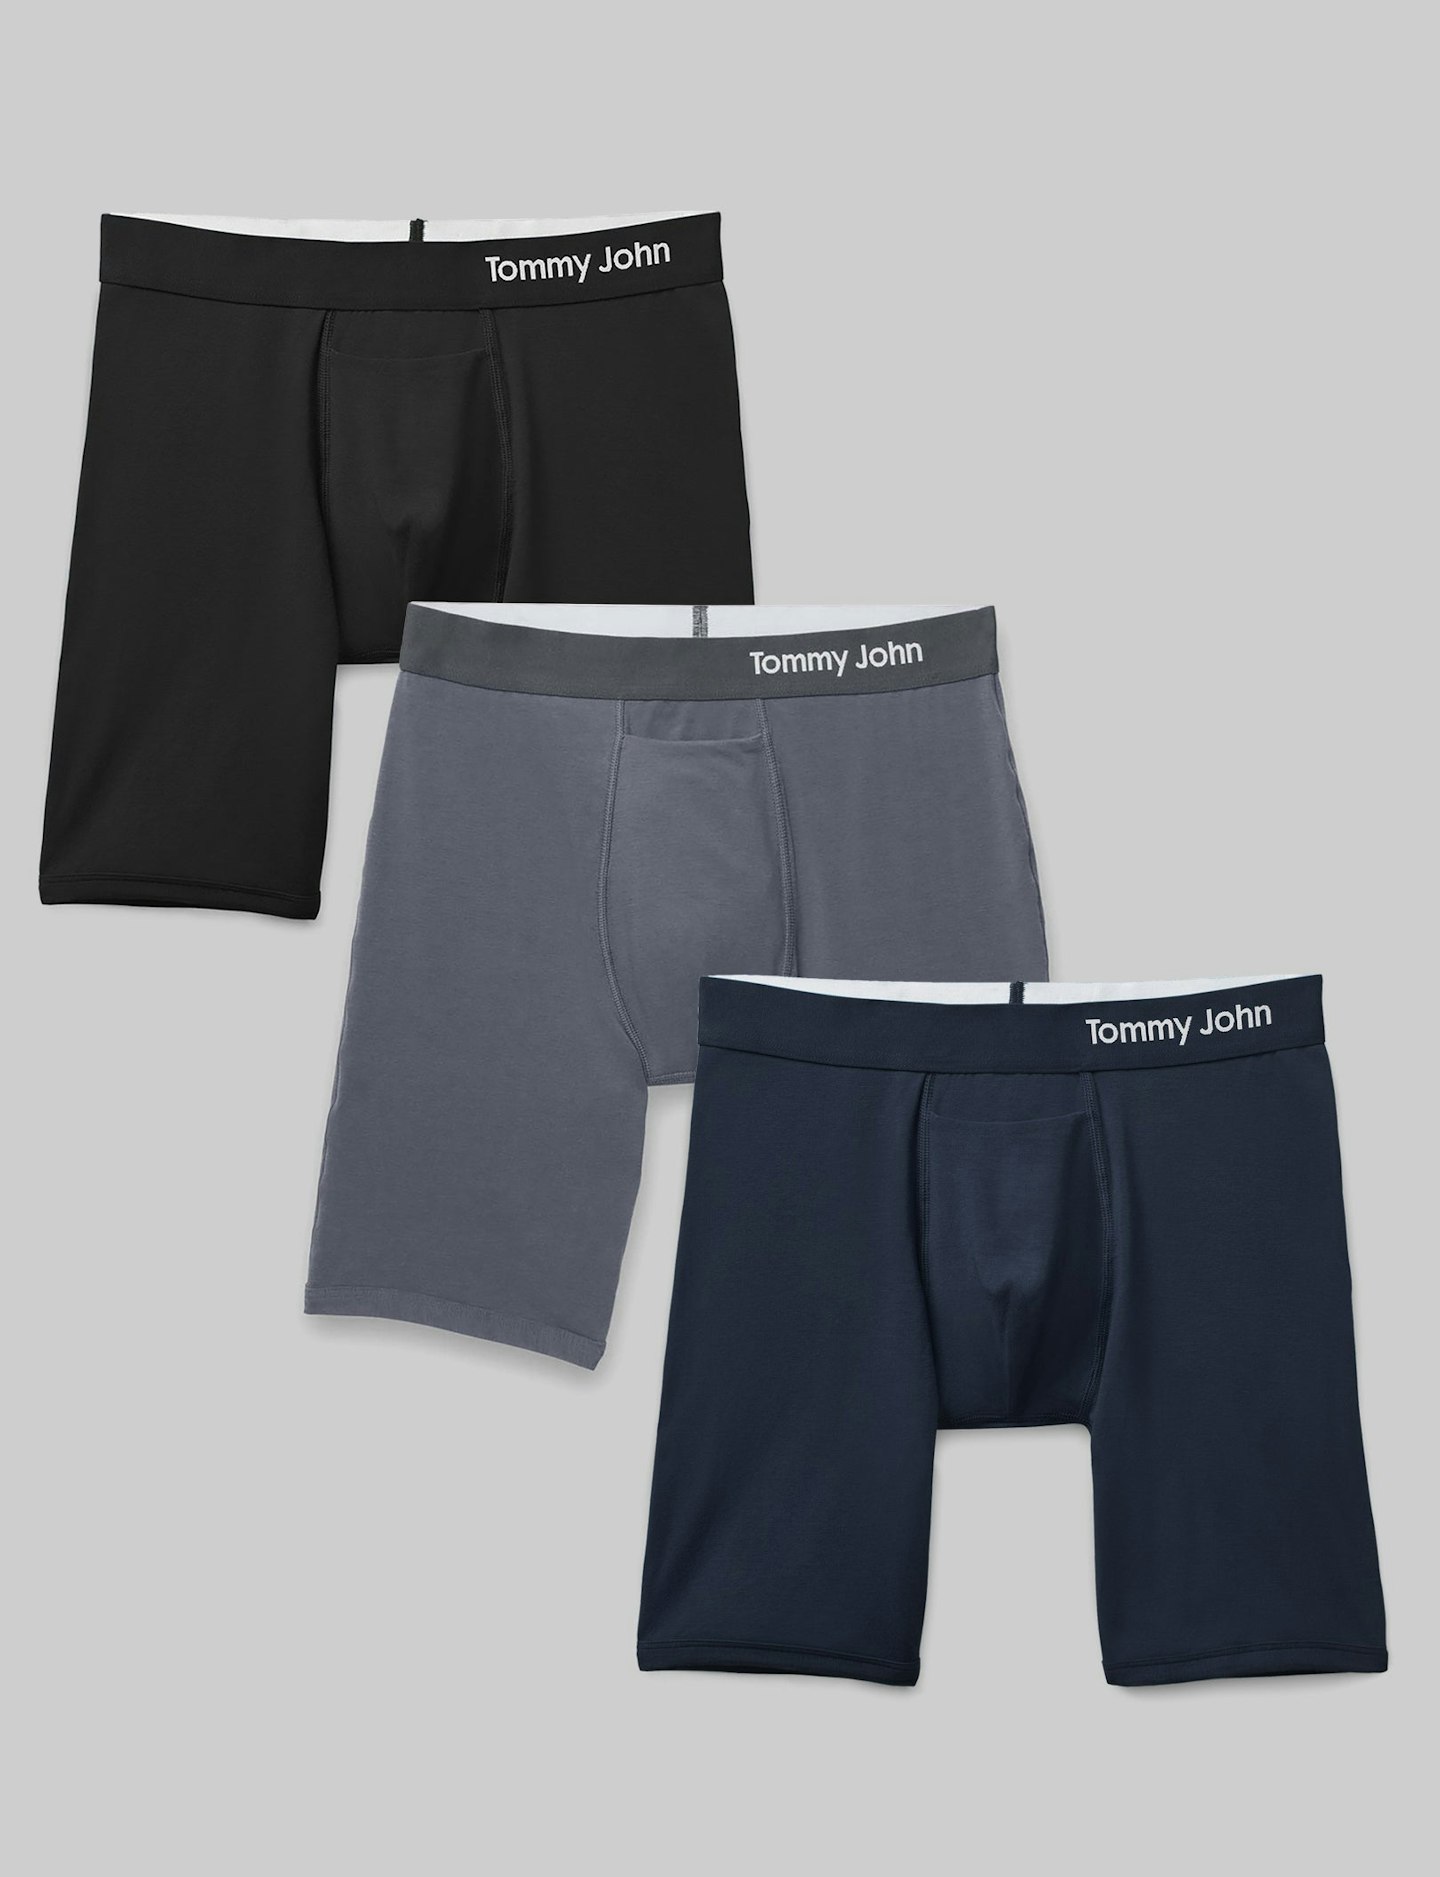 Buy COOLZY Men's Cotton Innerwear Underwear Brief (Pack of 3) (S